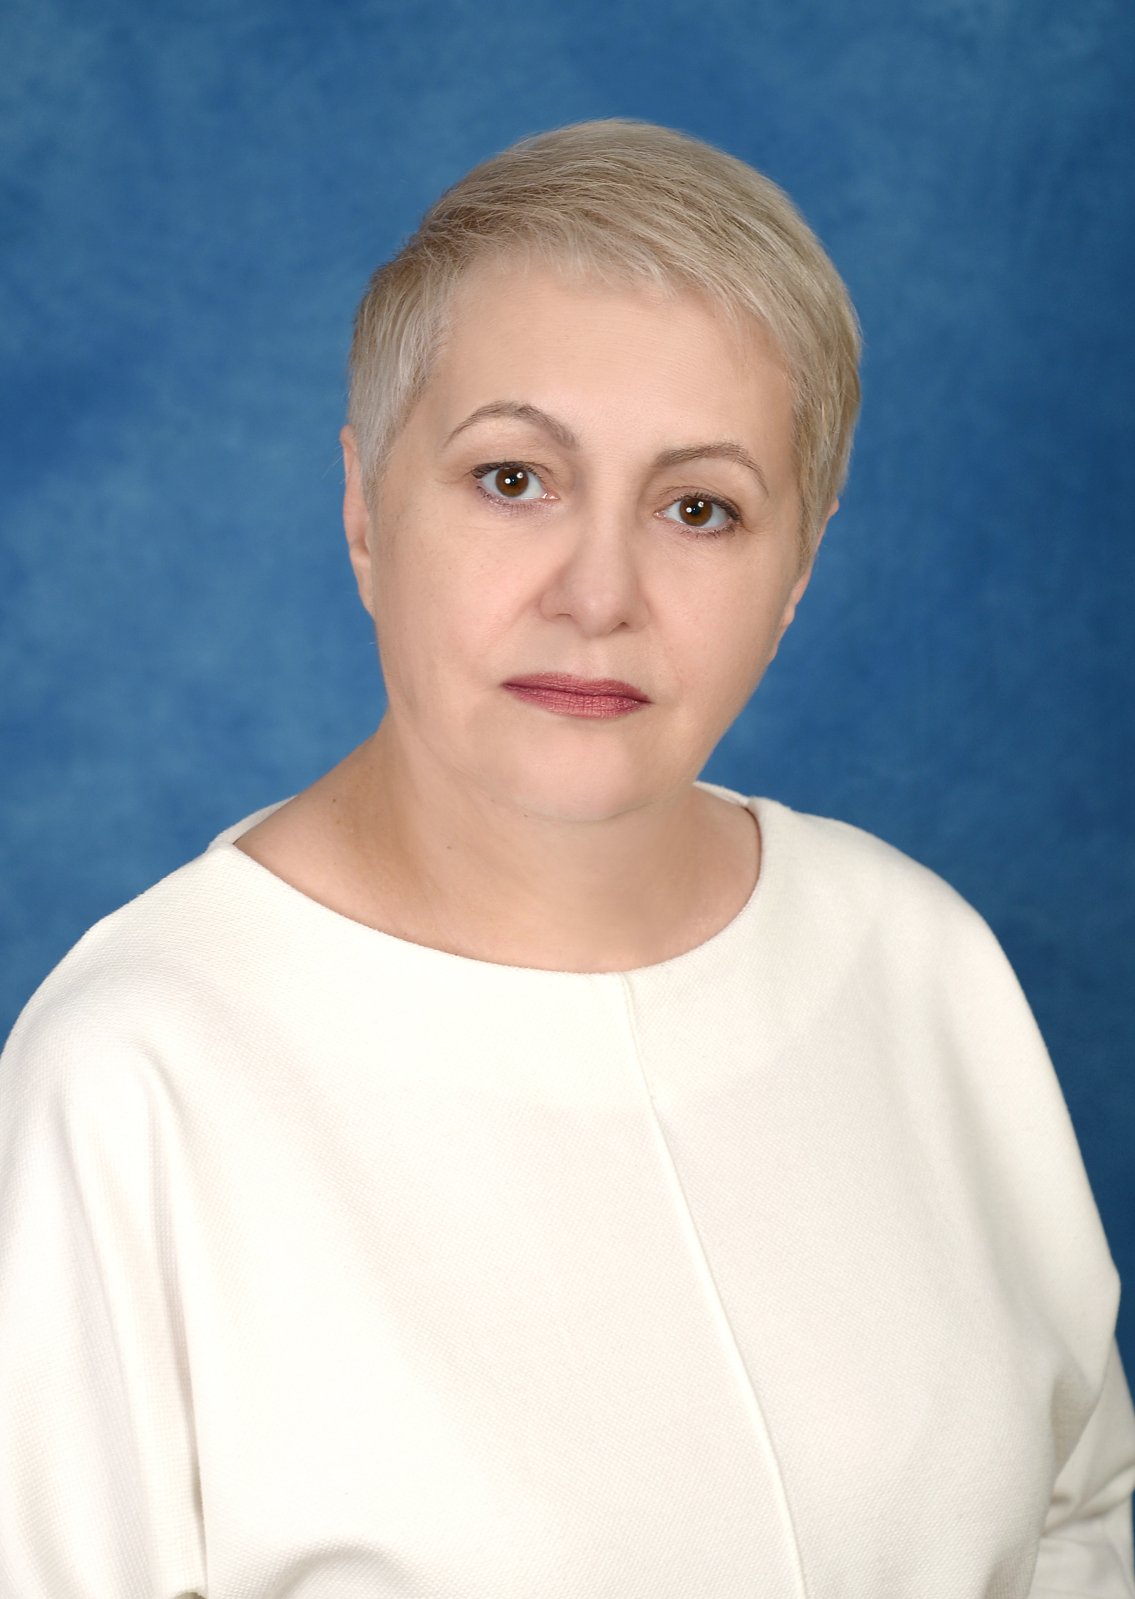 Педагогический работник Охрименко Анжела Анатольевна.